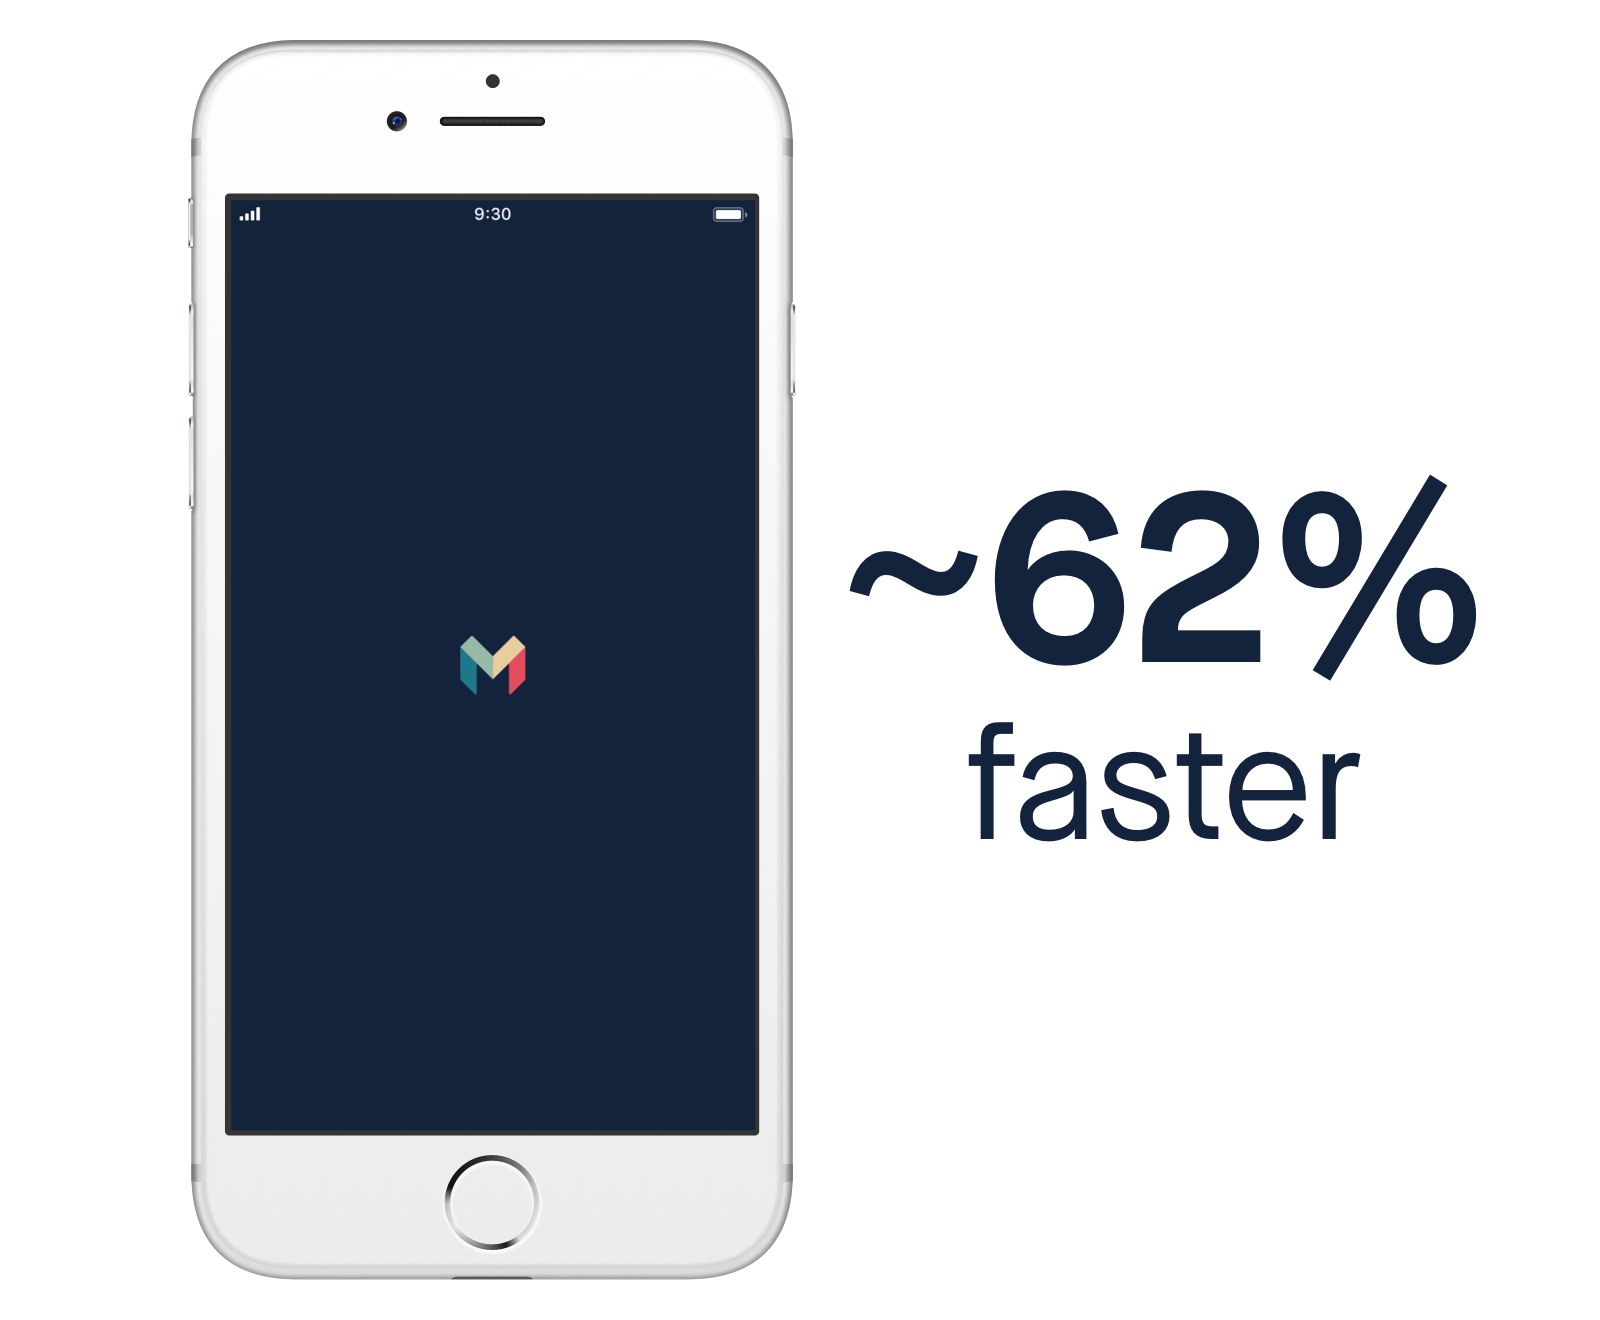 Screen showing Monzo iOS app launch